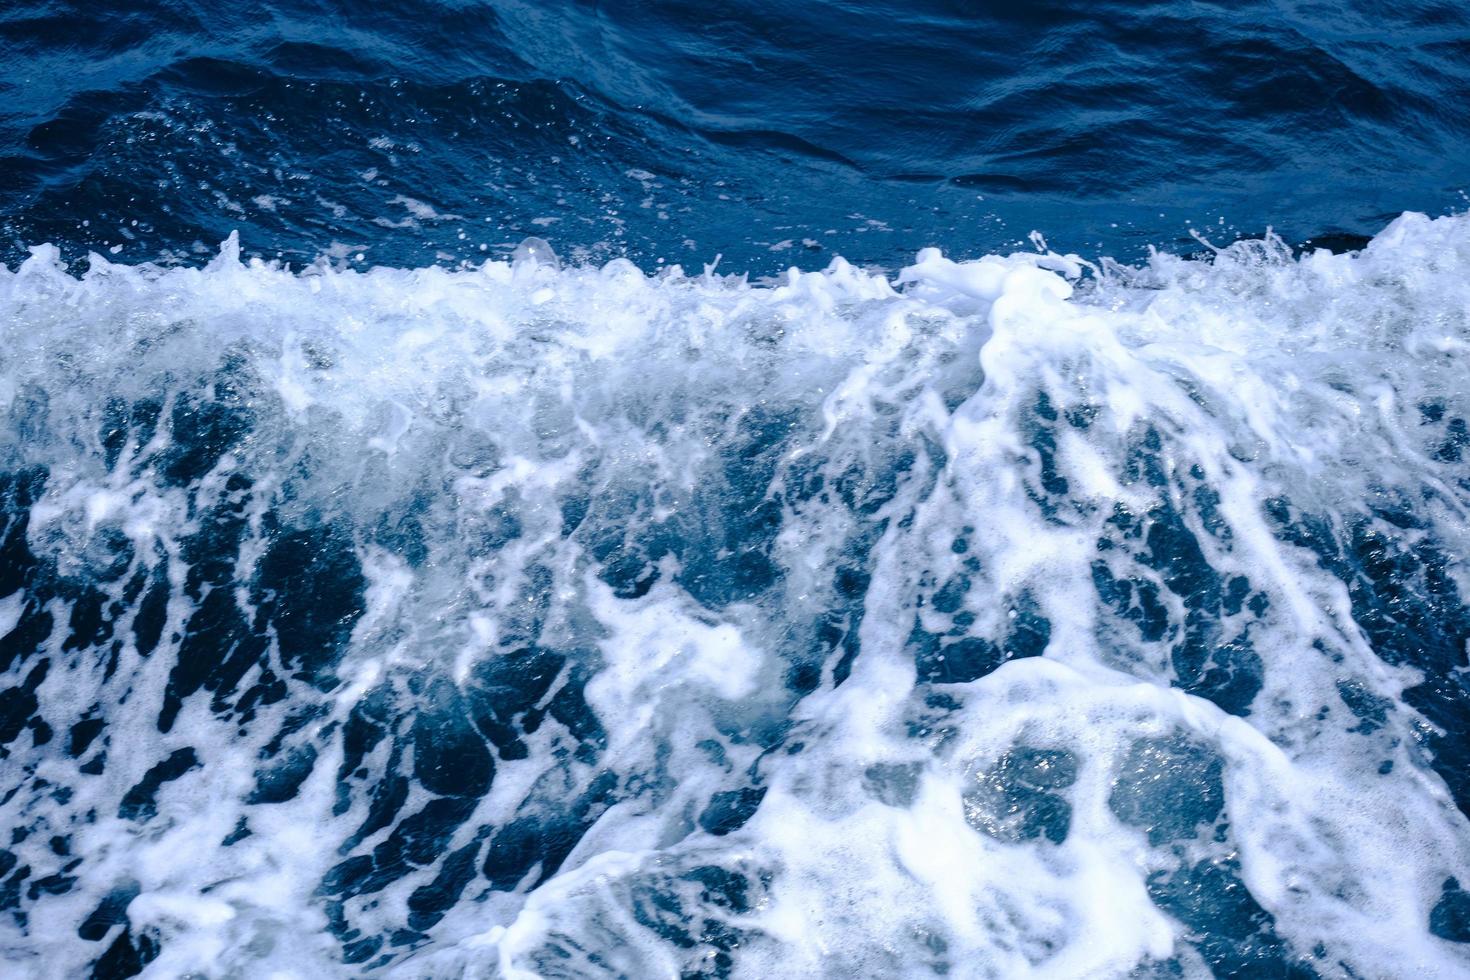 las olas al lado del barco navegan en el mar en verano. fondo de olas azules del océano y burbujas de espuma blanca. foto